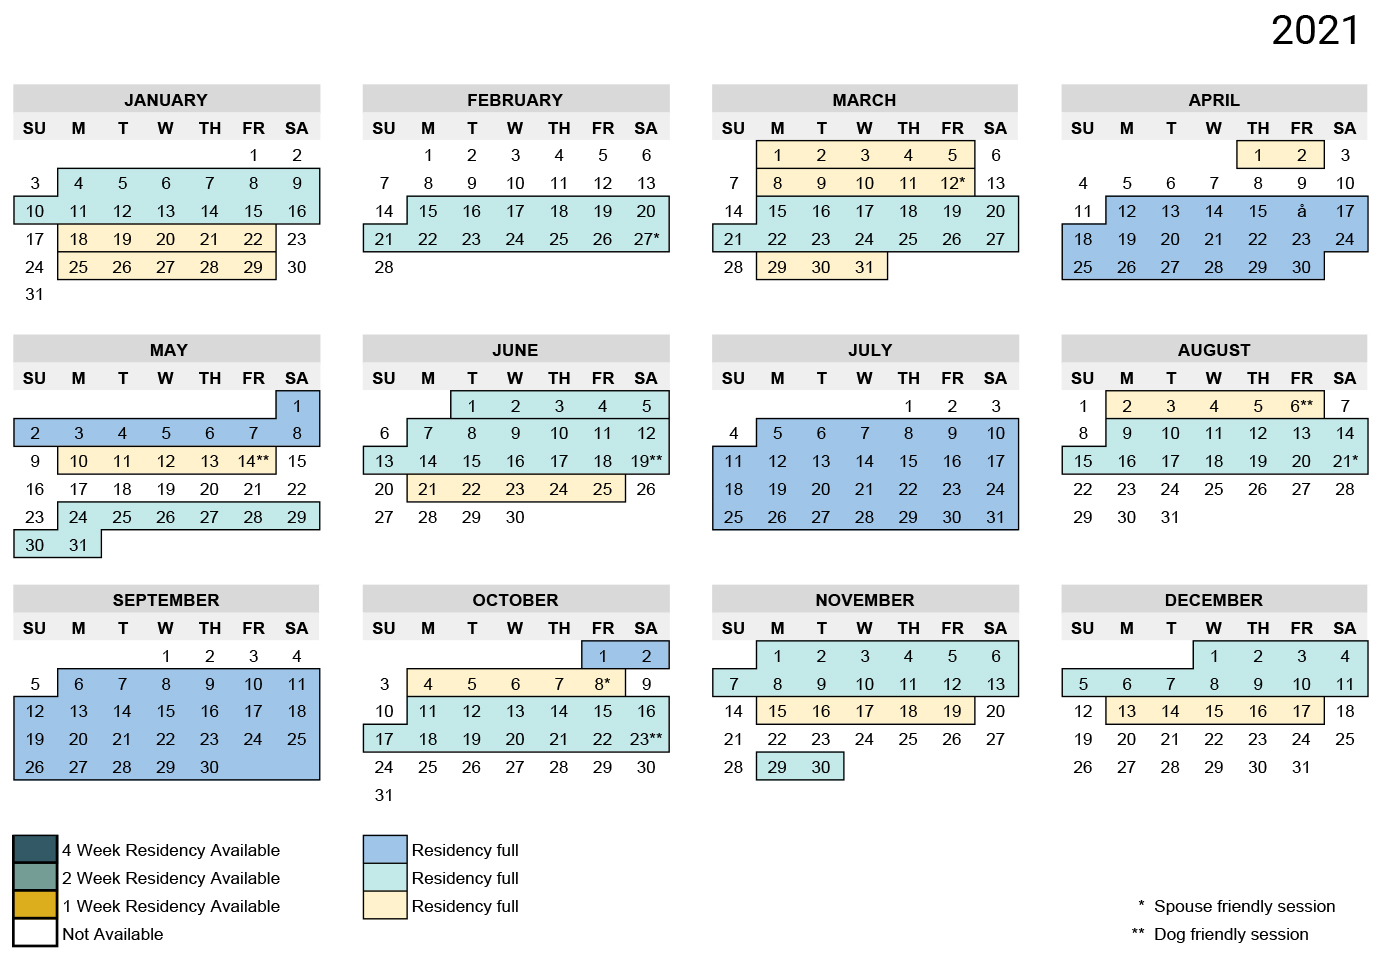 2021 ICR Calendar